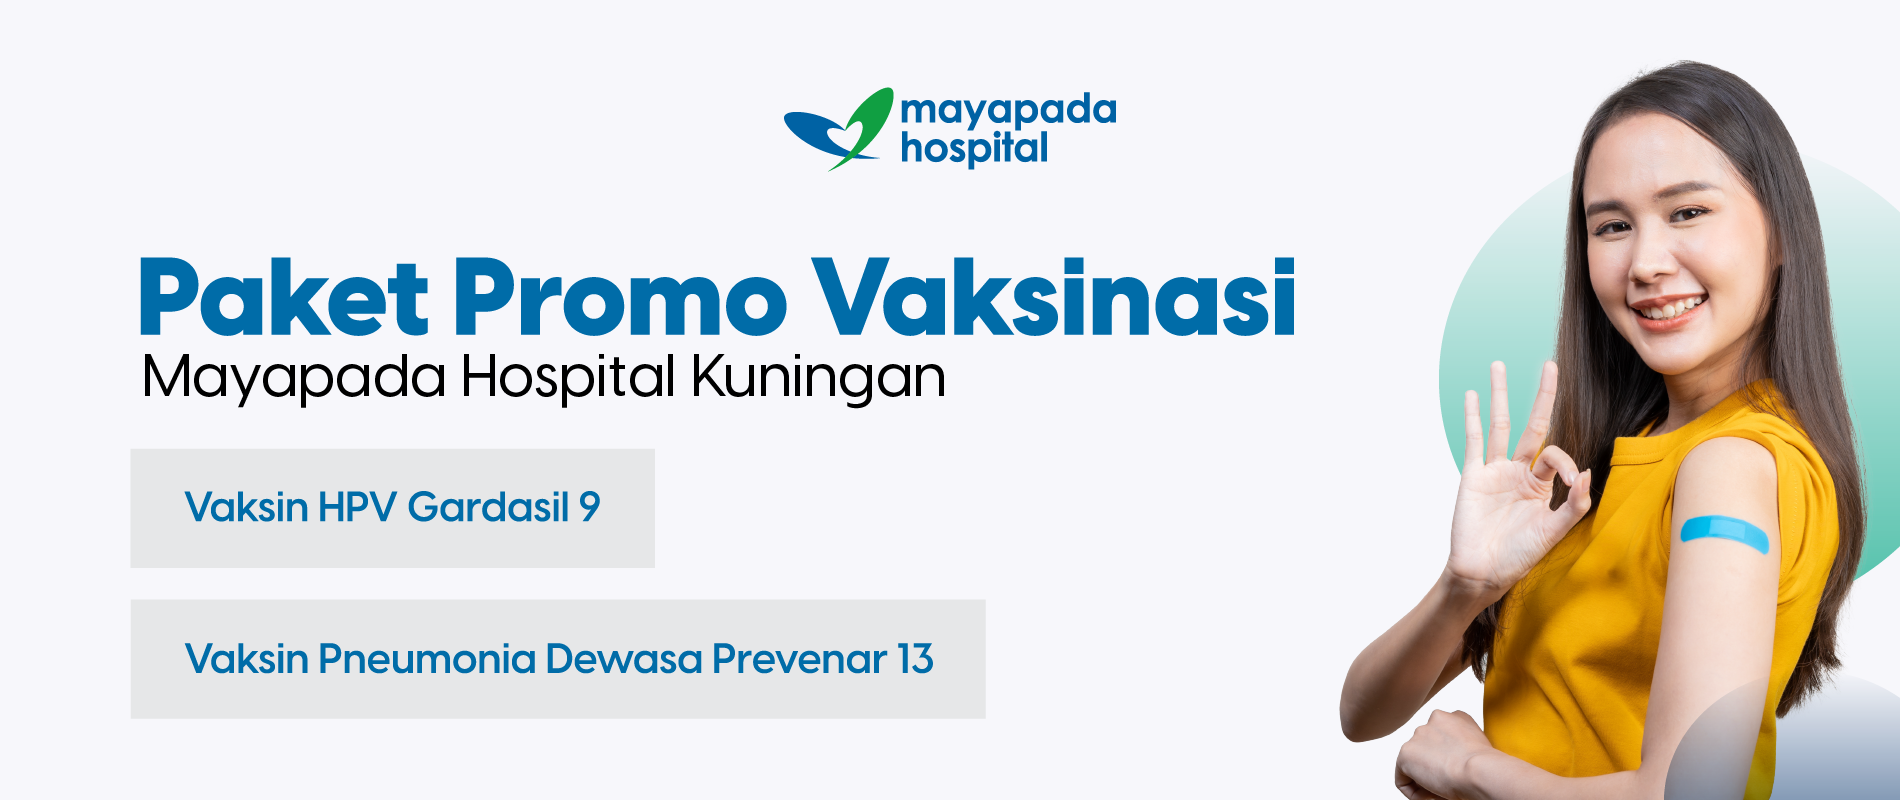 Promo Vaksinasi Mayapada Hospital Kuningan (MHKN) IMG